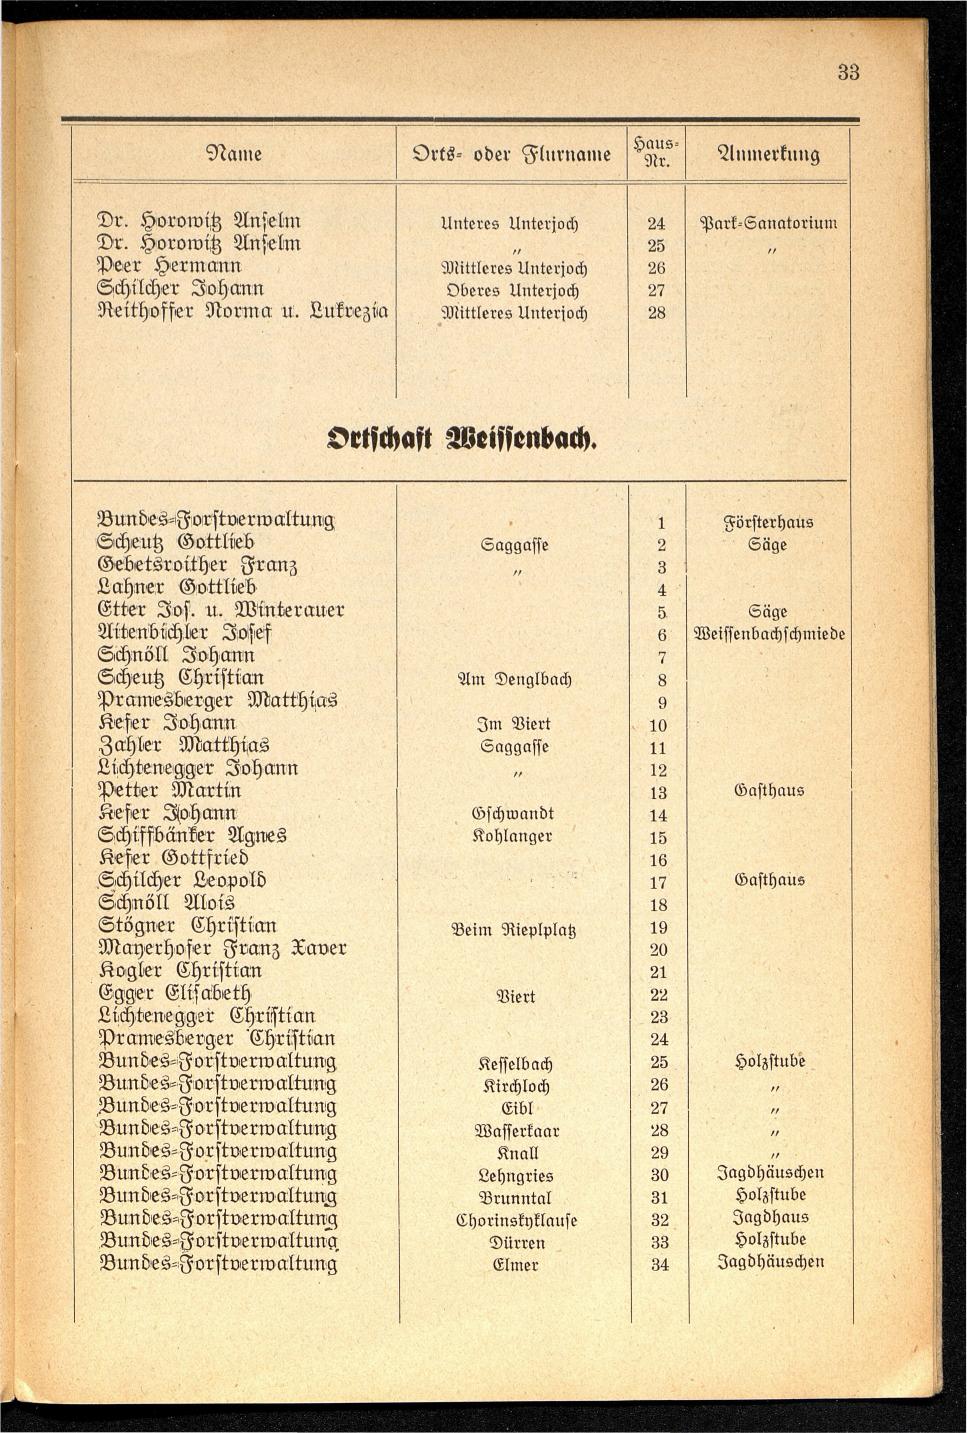 Häuser-Verzeichnis der Gemeinde Goisern nach dem Stande von November 1937 - Seite 35